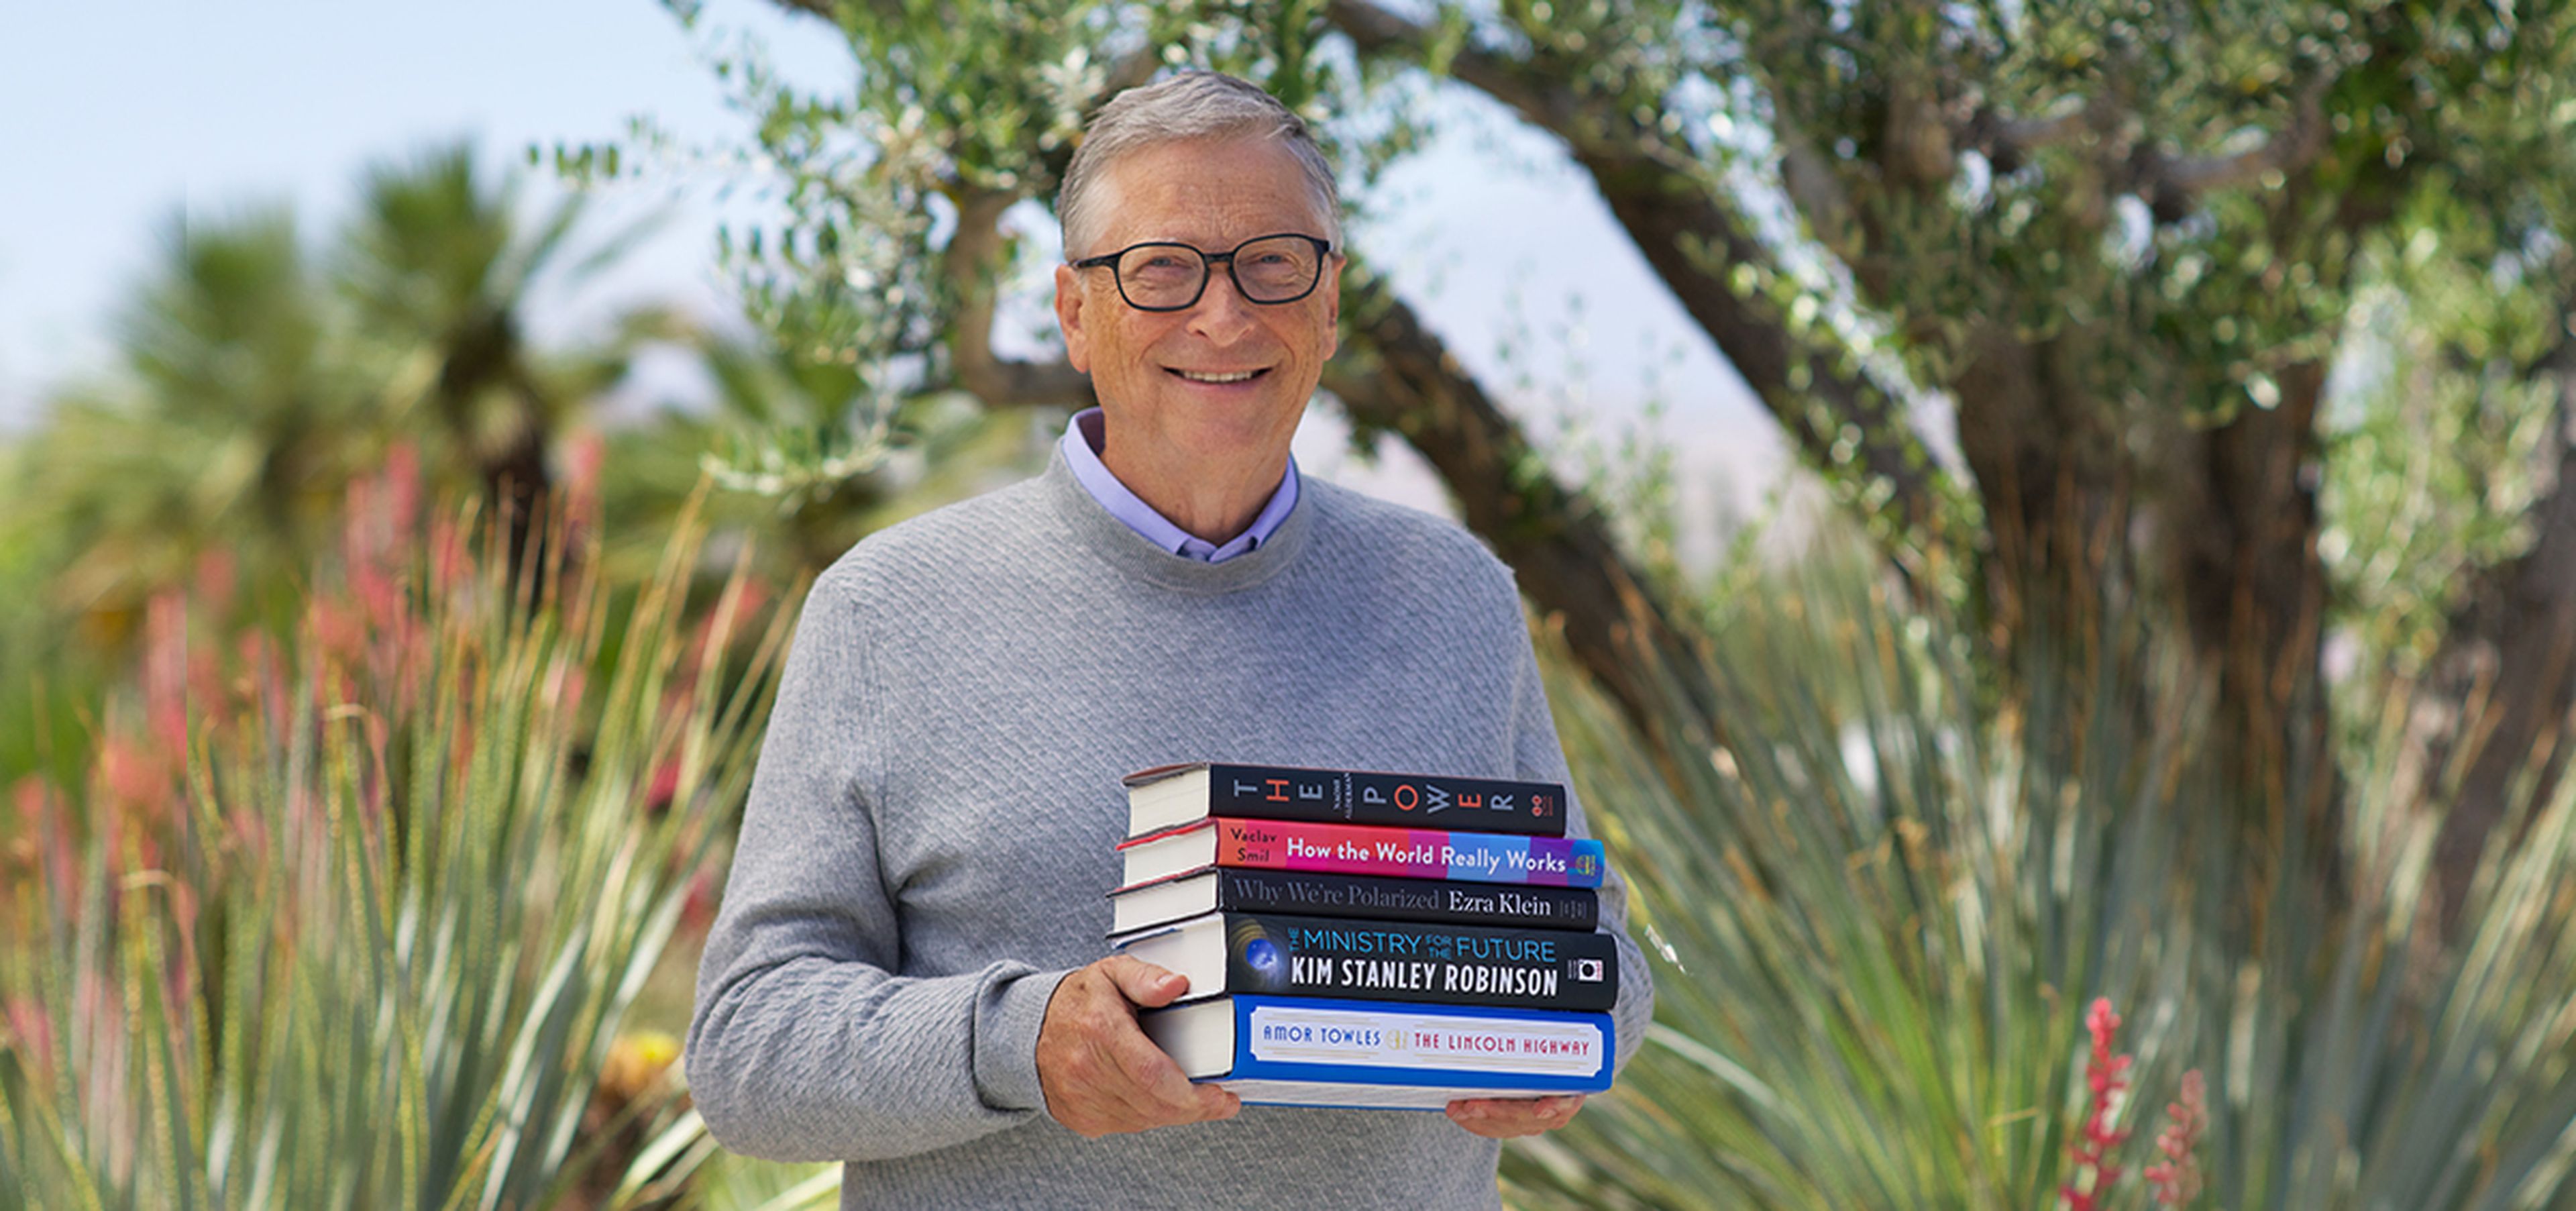 Bill Gates, filántropo y cofundador de Microsft, junto a sus recomendaciones literarias para este verano.